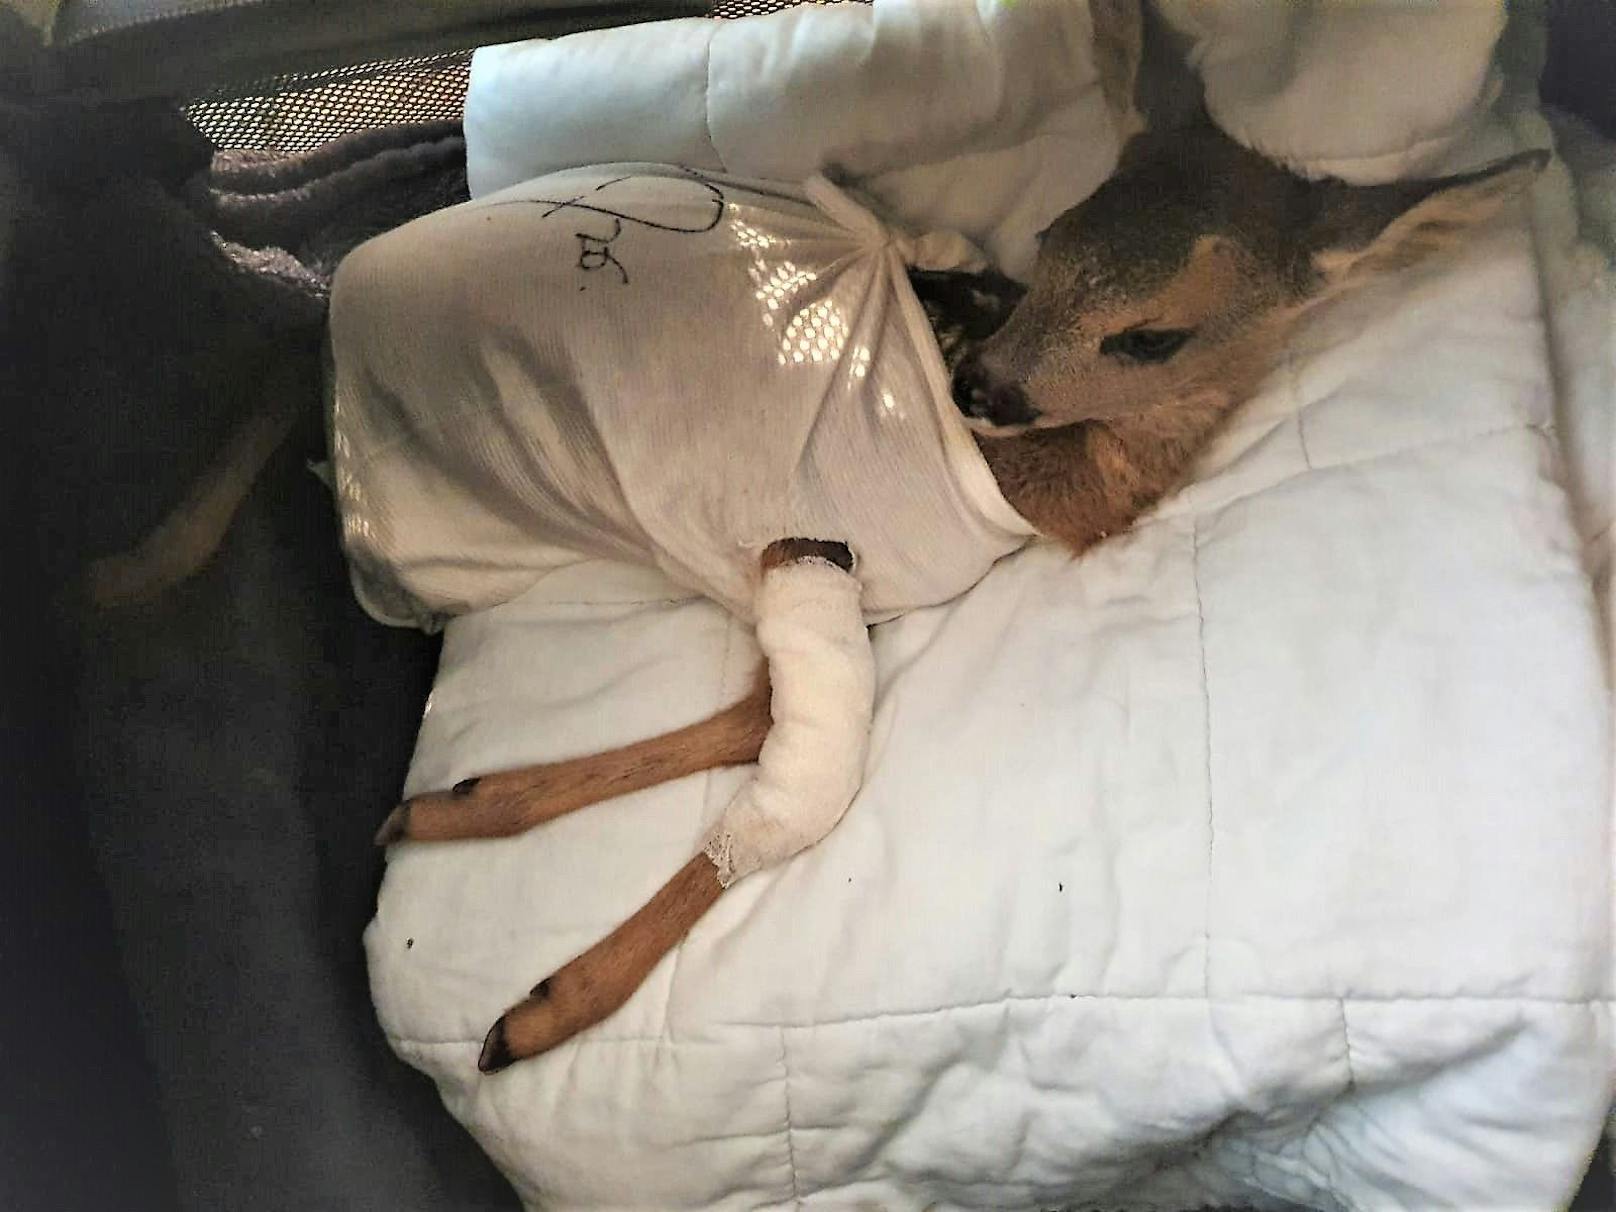 Bein durch Mäher verloren - OP rettete Bambi